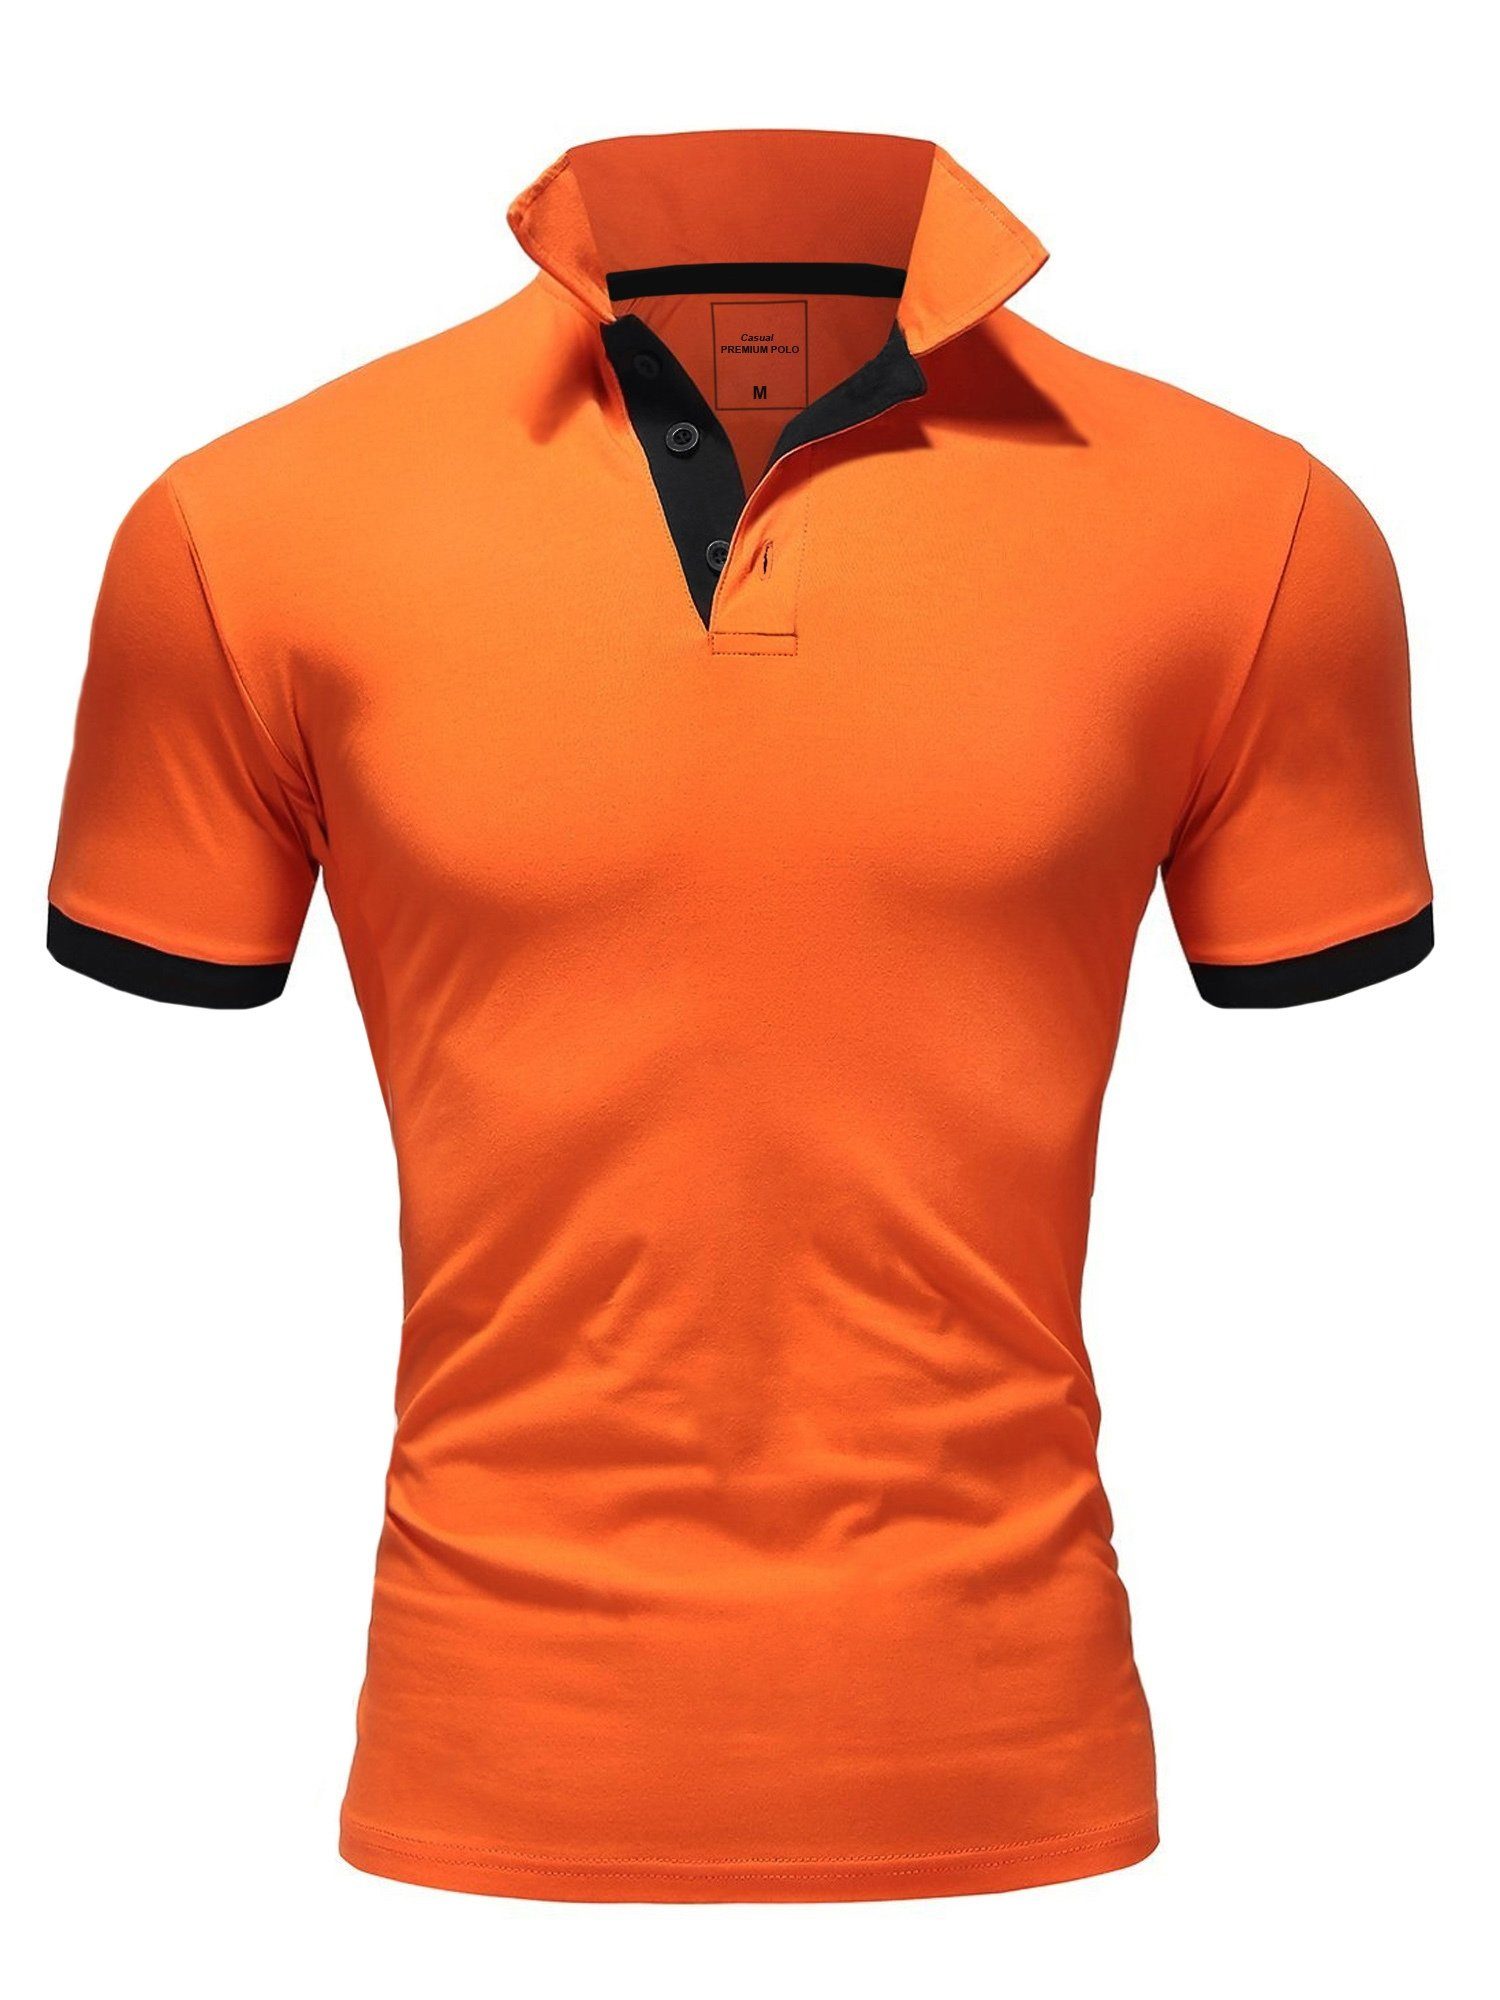 REPUBLIX Poloshirt RONALD Herren Shirt mit kontrastierenden Akzenten, in Piqué Qualität Orange/Schwarz